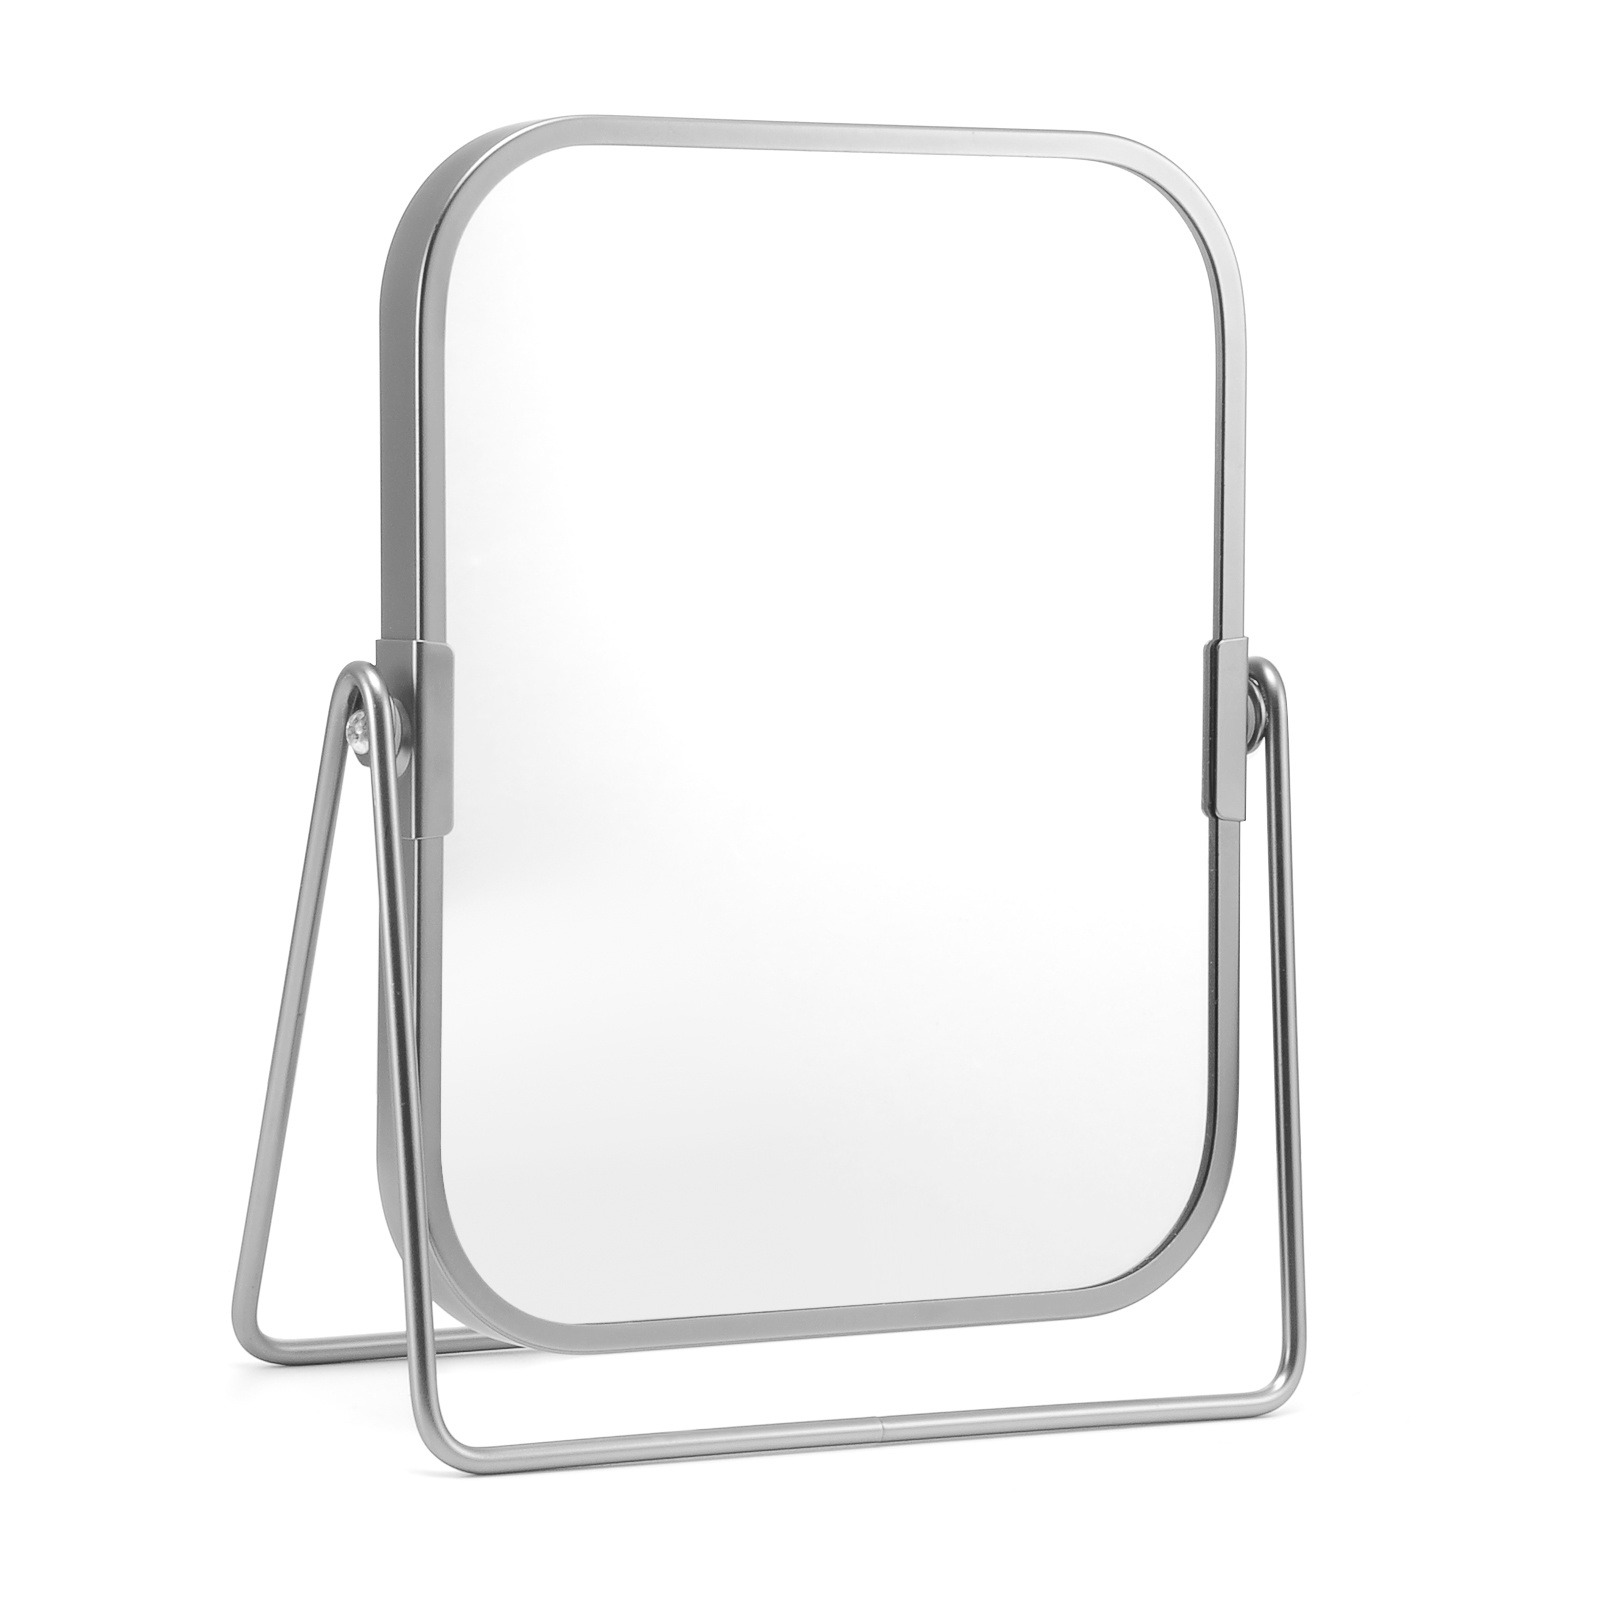 台式旋转两面镜子厂家定制金属台式镜子放大化妆镜桌面梳妆镜子方形支架台镜